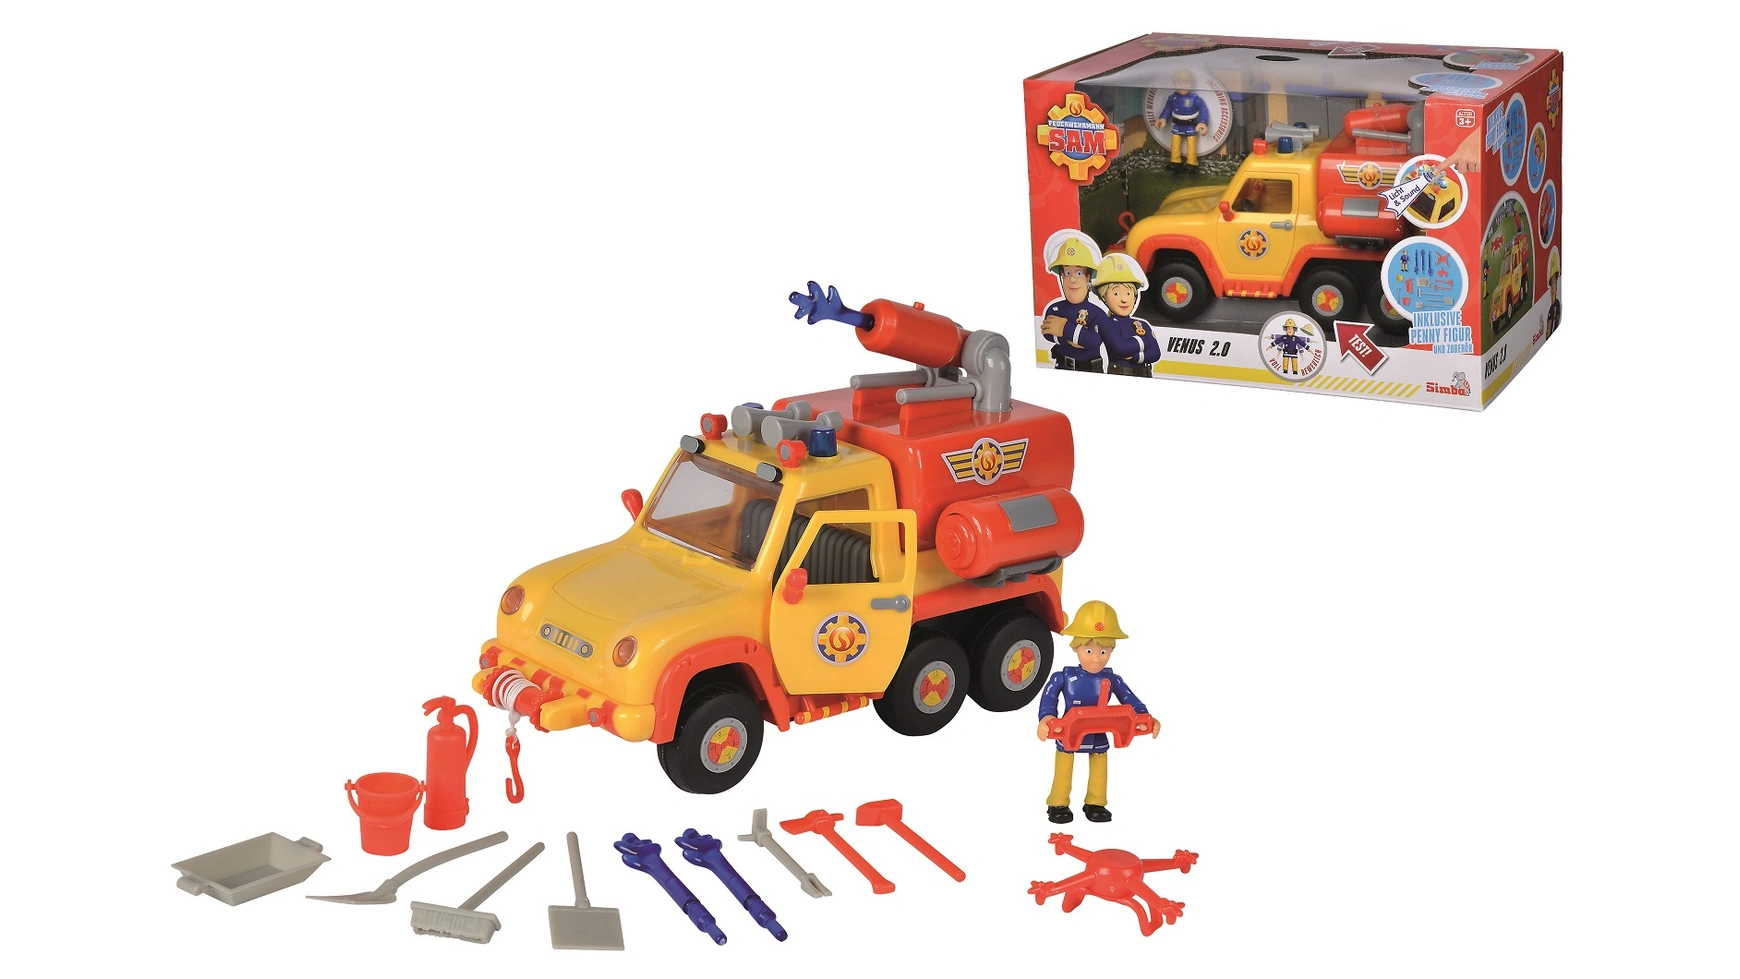 Пожарный сэм пожарная машина сэма венера 20 с фигуркой Simba конструктор play smart автомонтаж пожарная машина со светом и звуком серия спецавтомобиль 105 деталей спецтехника